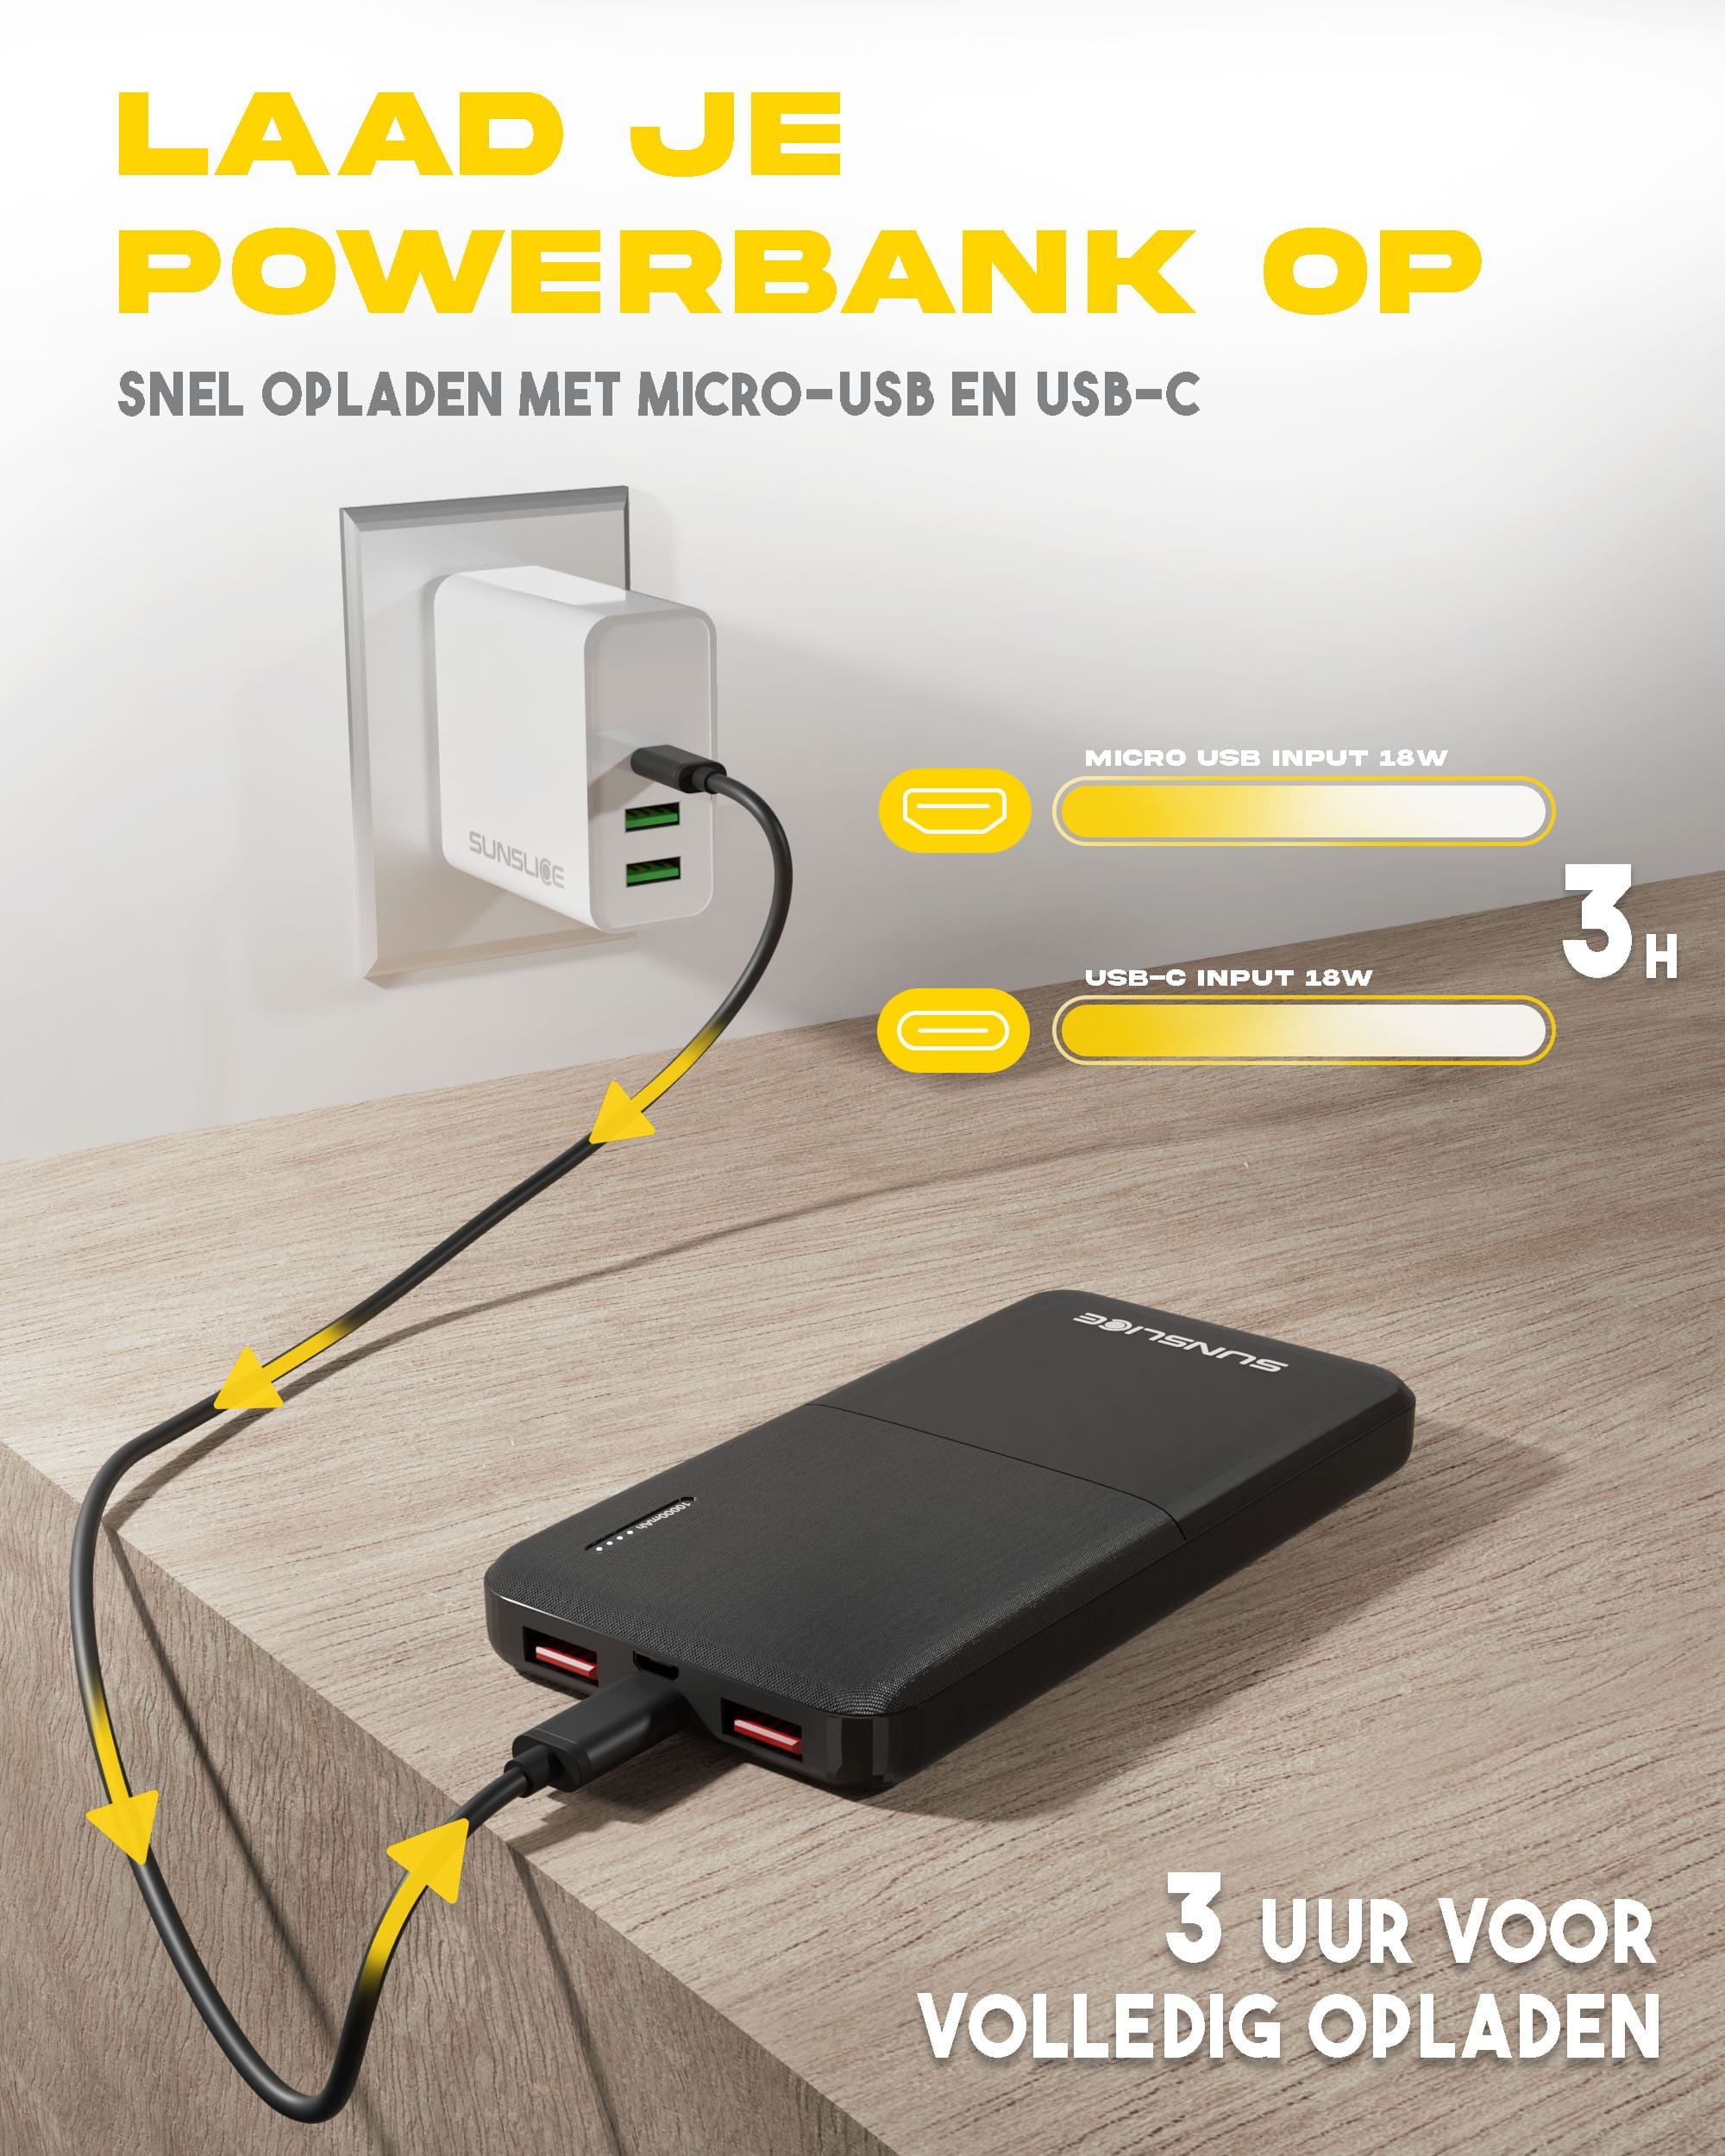 Laad je powerbank op via de micro usb of usb-c poorten: 3 uur voor volledig opladen